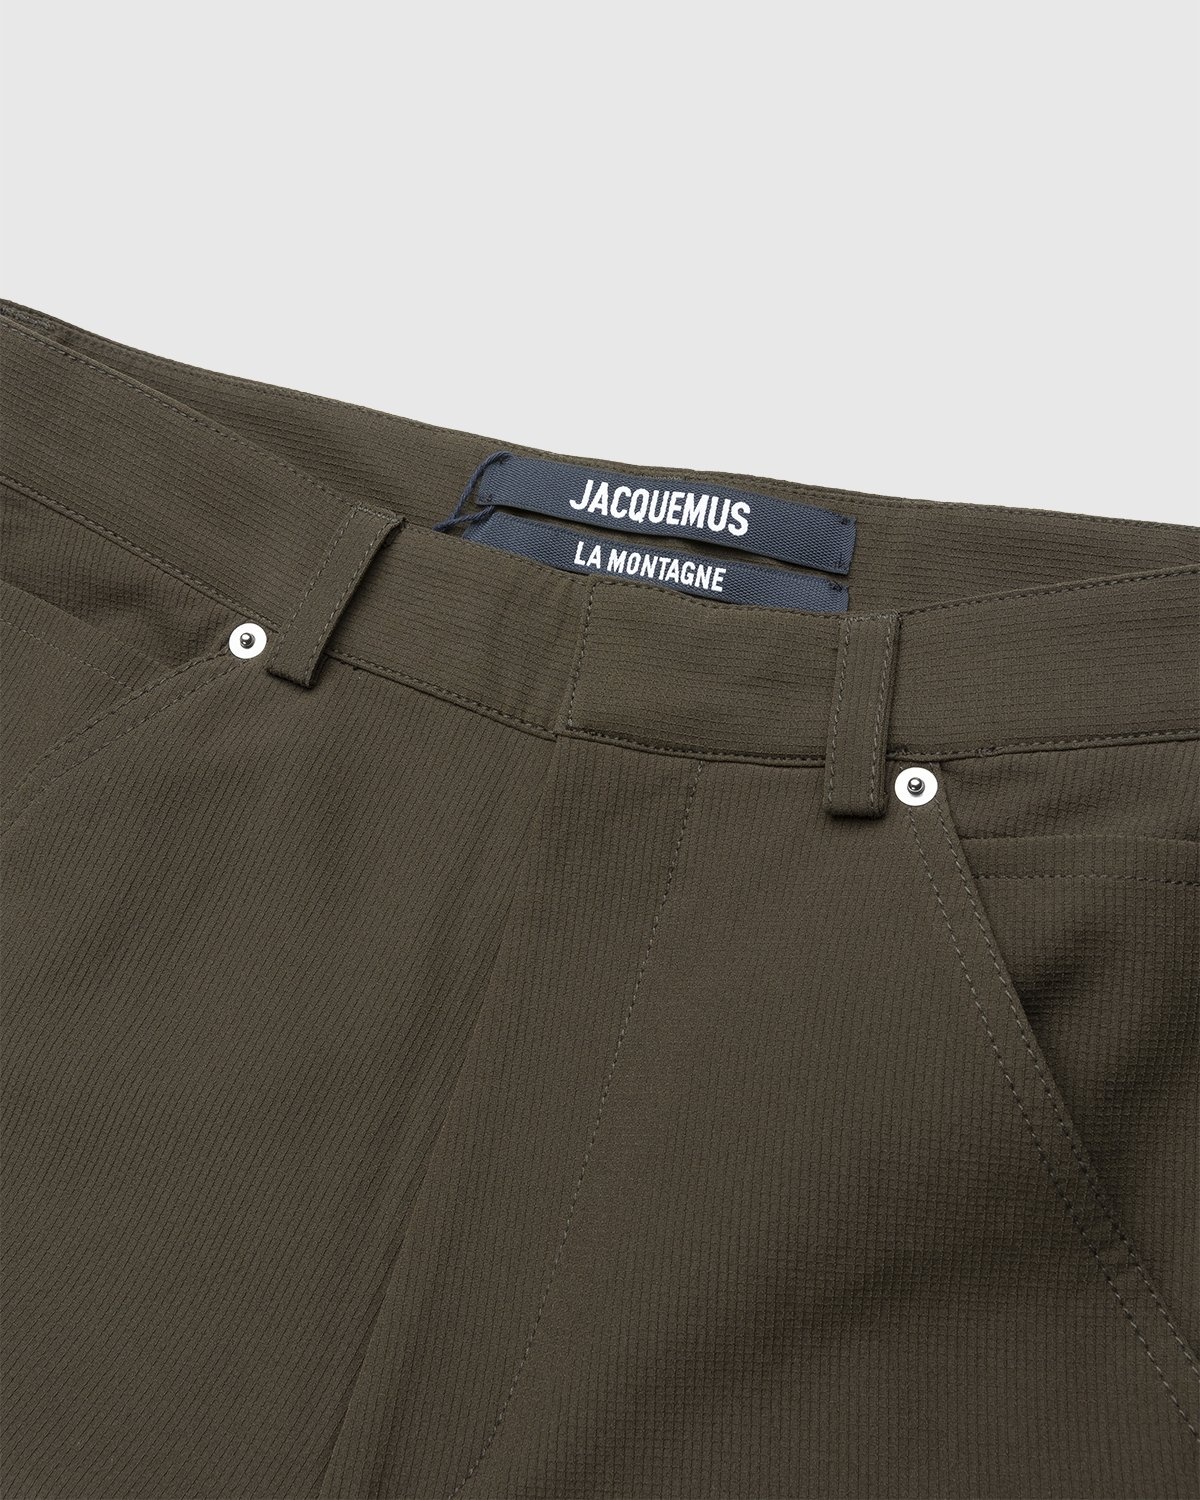 JACQUEMUS – Le Pantalon Peche Dark Khaki - Trousers - Green - Image 3